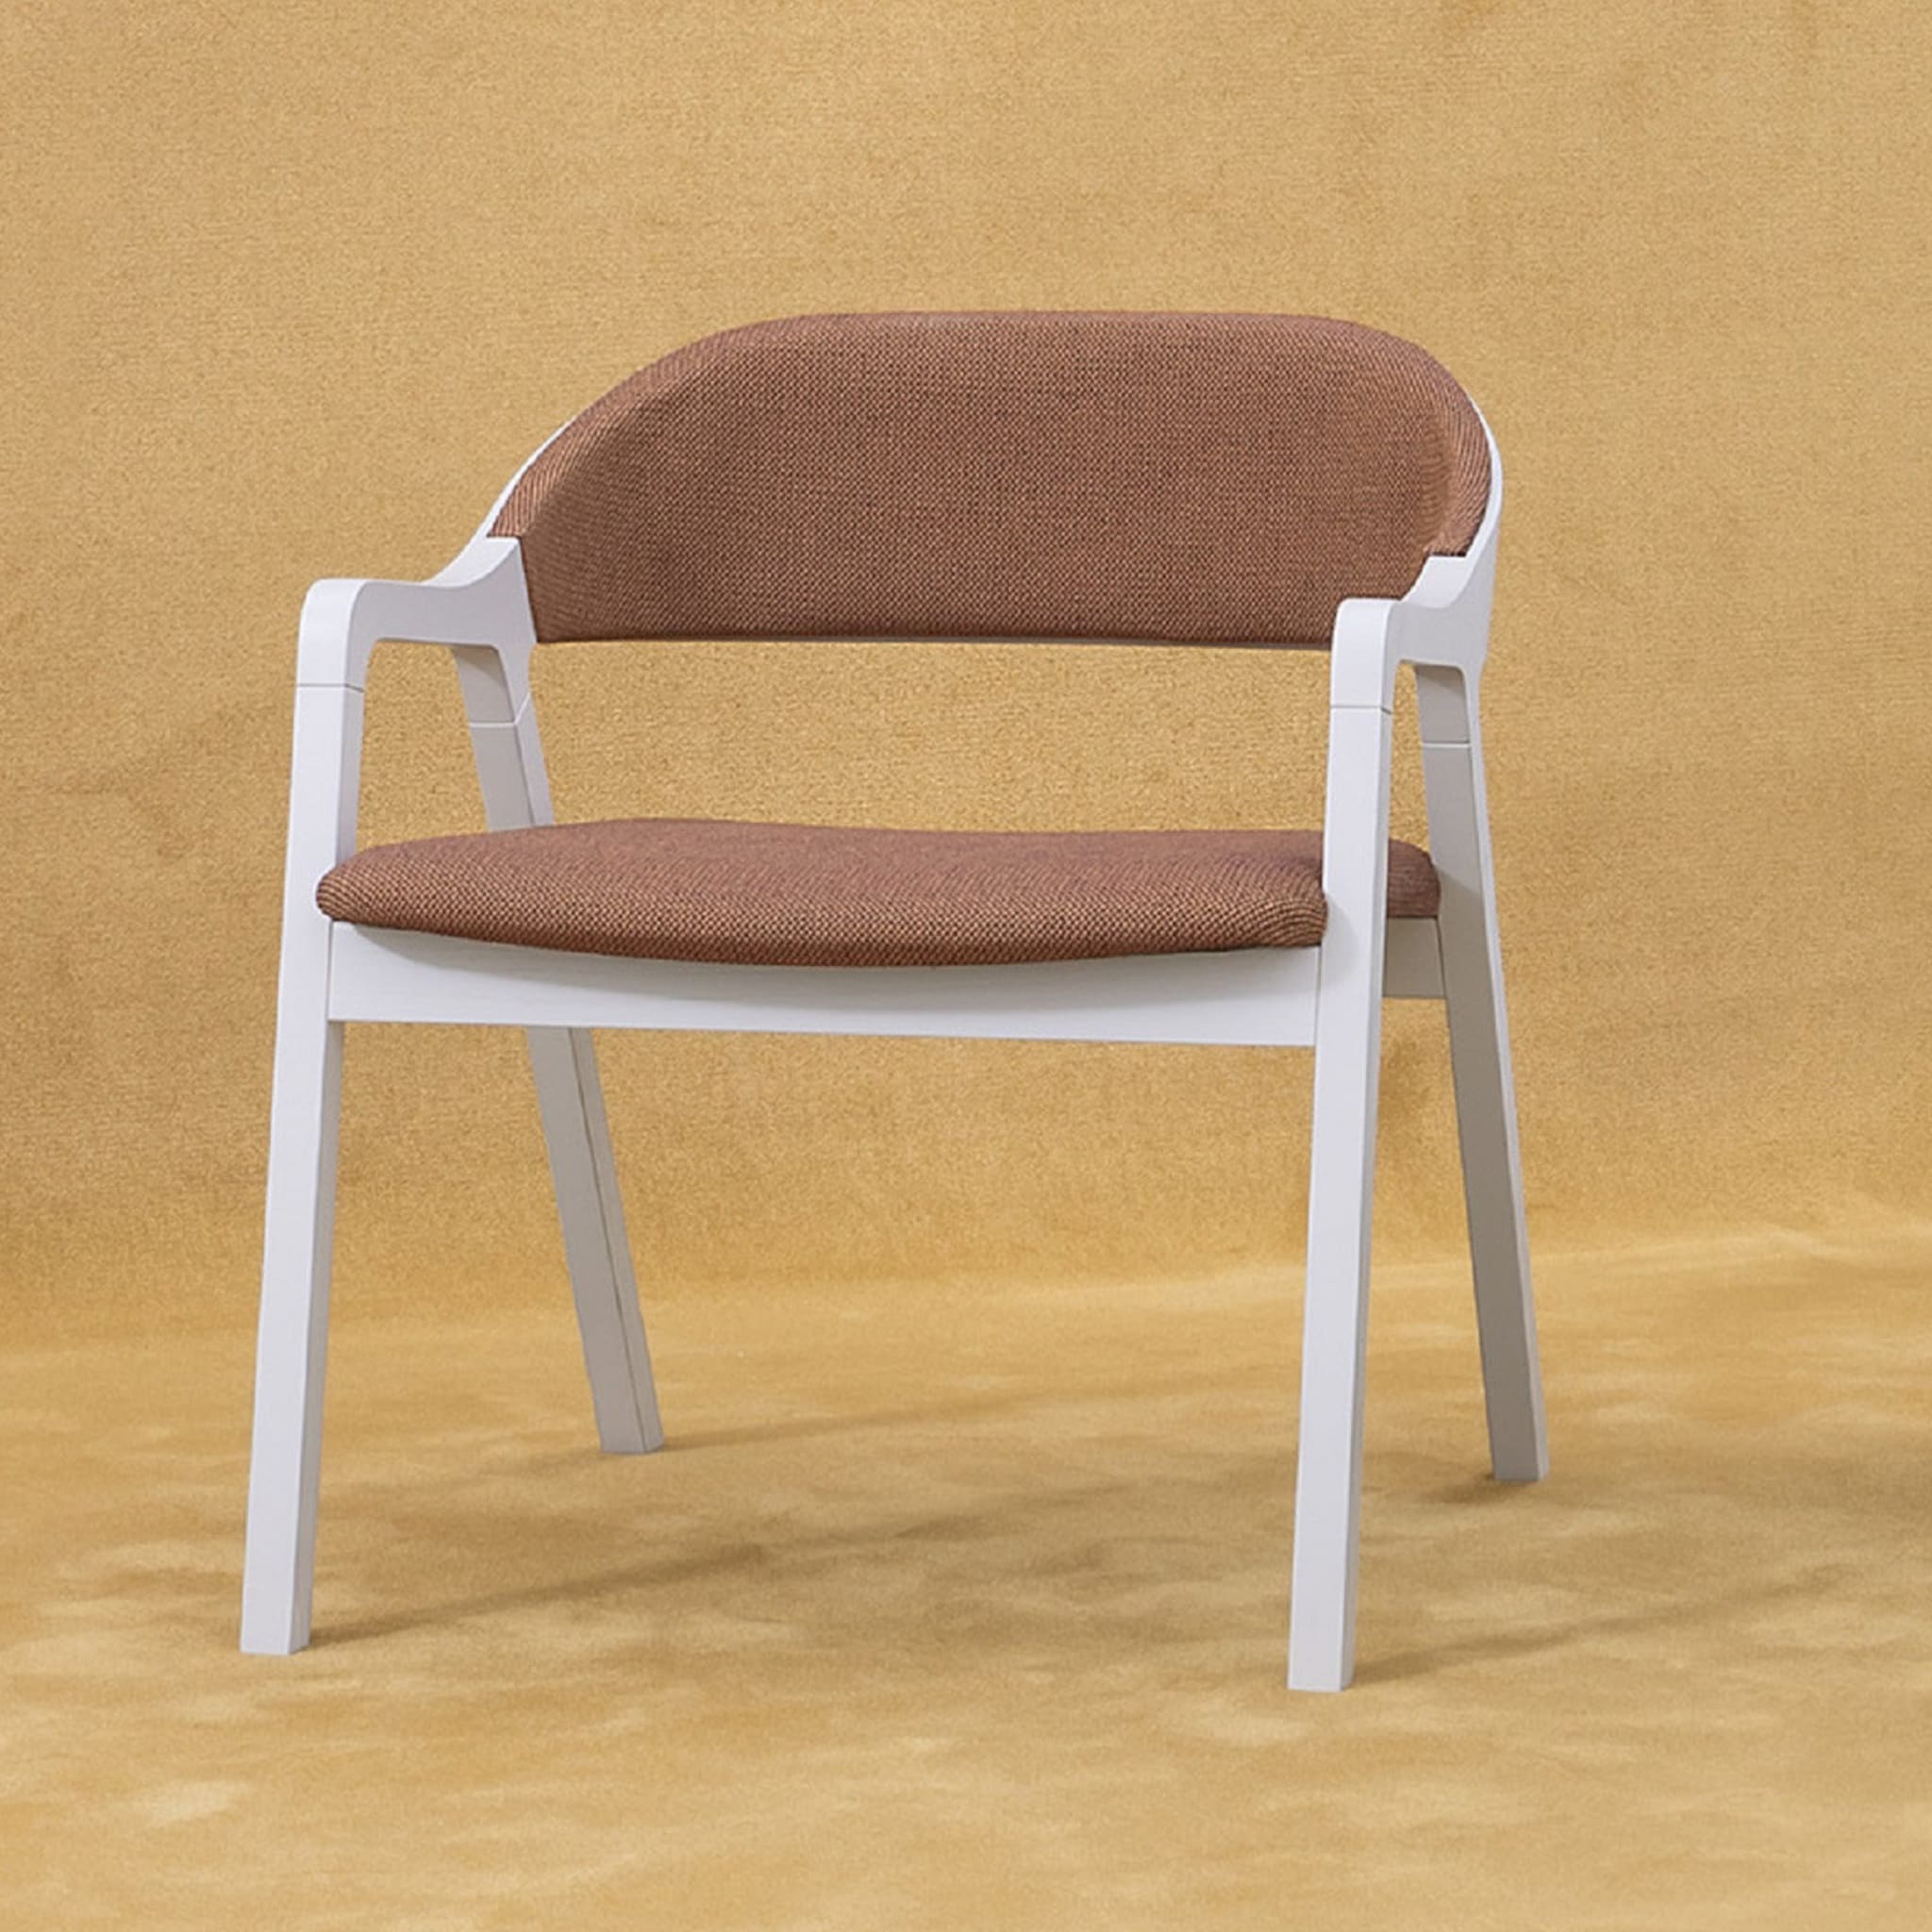 Layer Lounge Chair by Michael Geldmacher - Alternative view 2